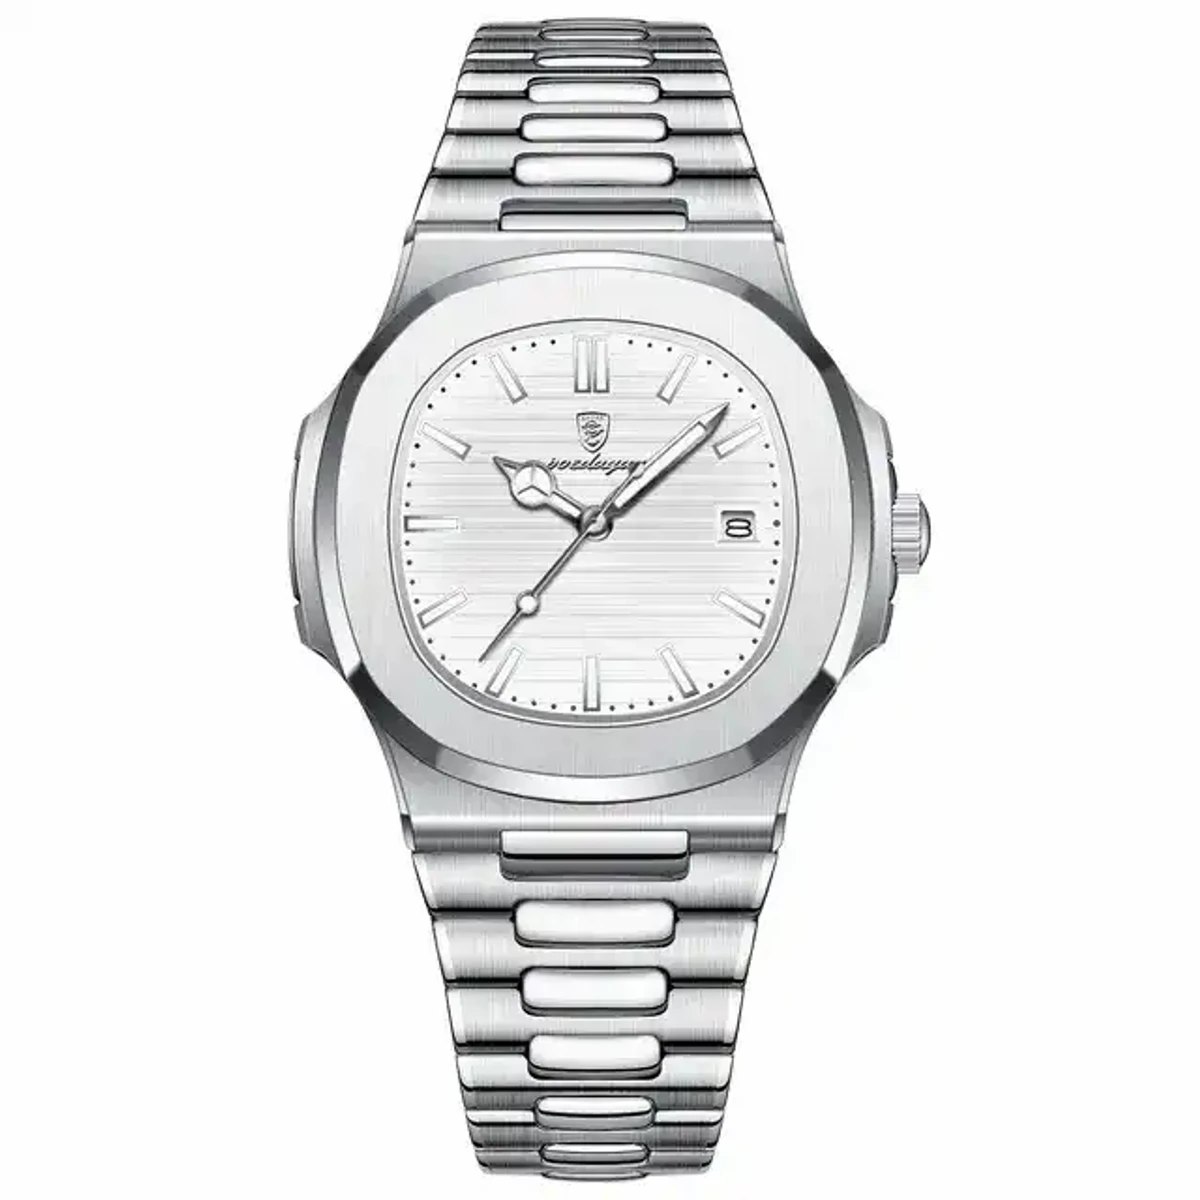 Poedagar 613 Business Quartz Luxury Stainless Steel Watch for Men-silver white